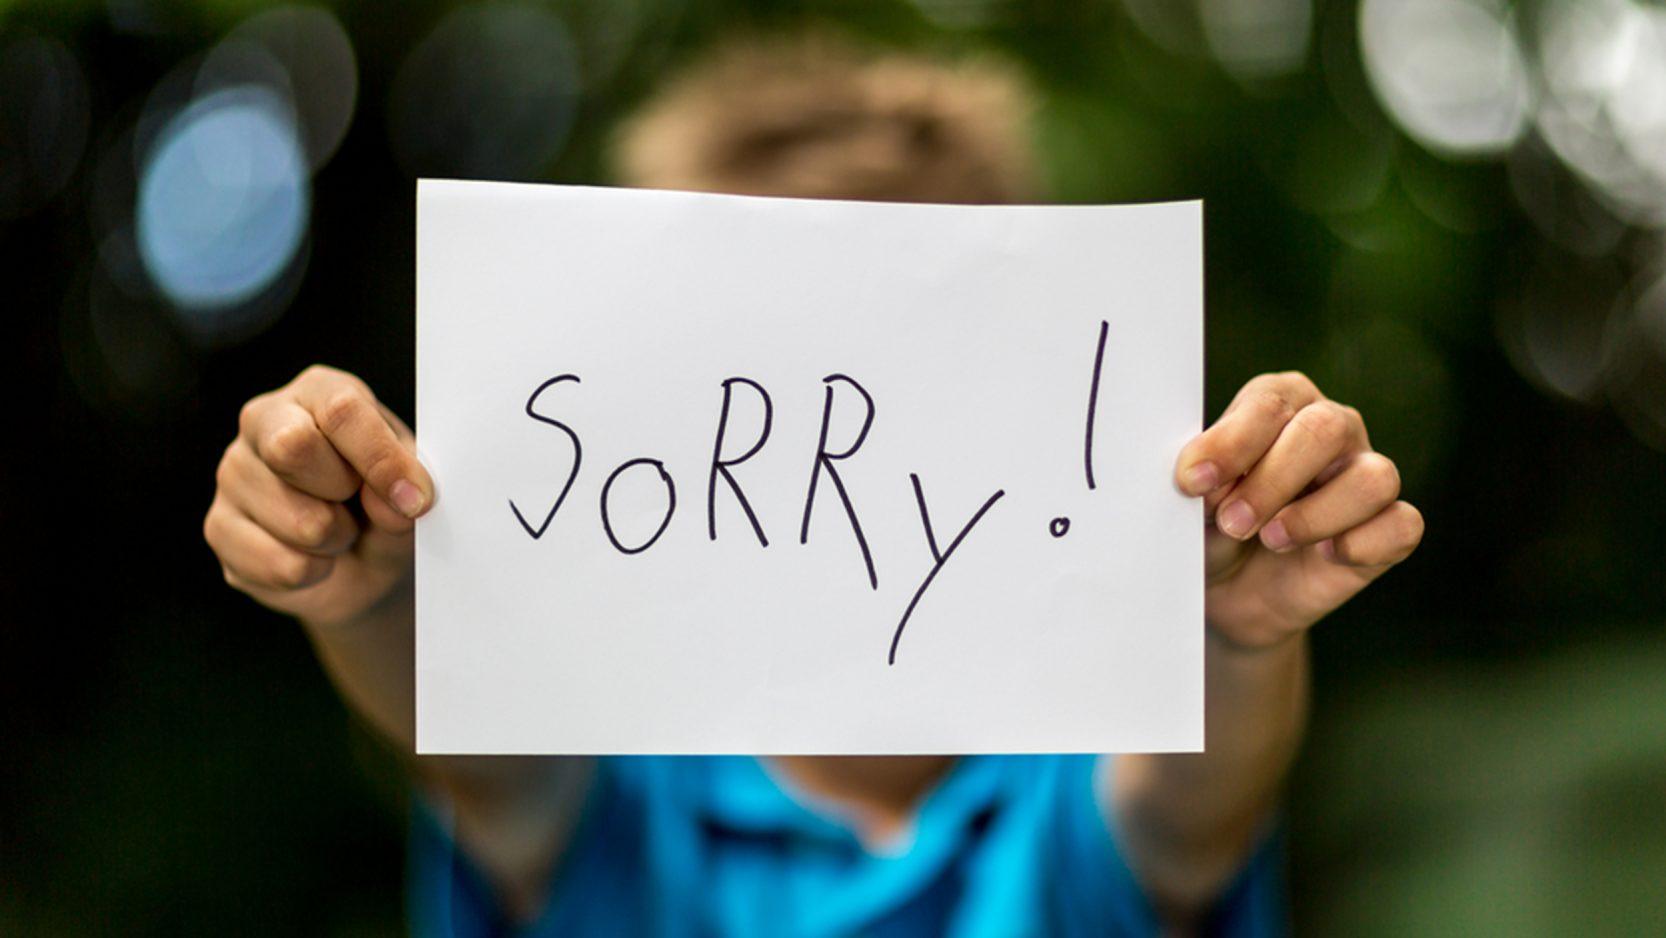 كيف تعتذر دون ان تقول أنا اسف وبطريقة مناسبة تجنبك الشعور بالحرج؟